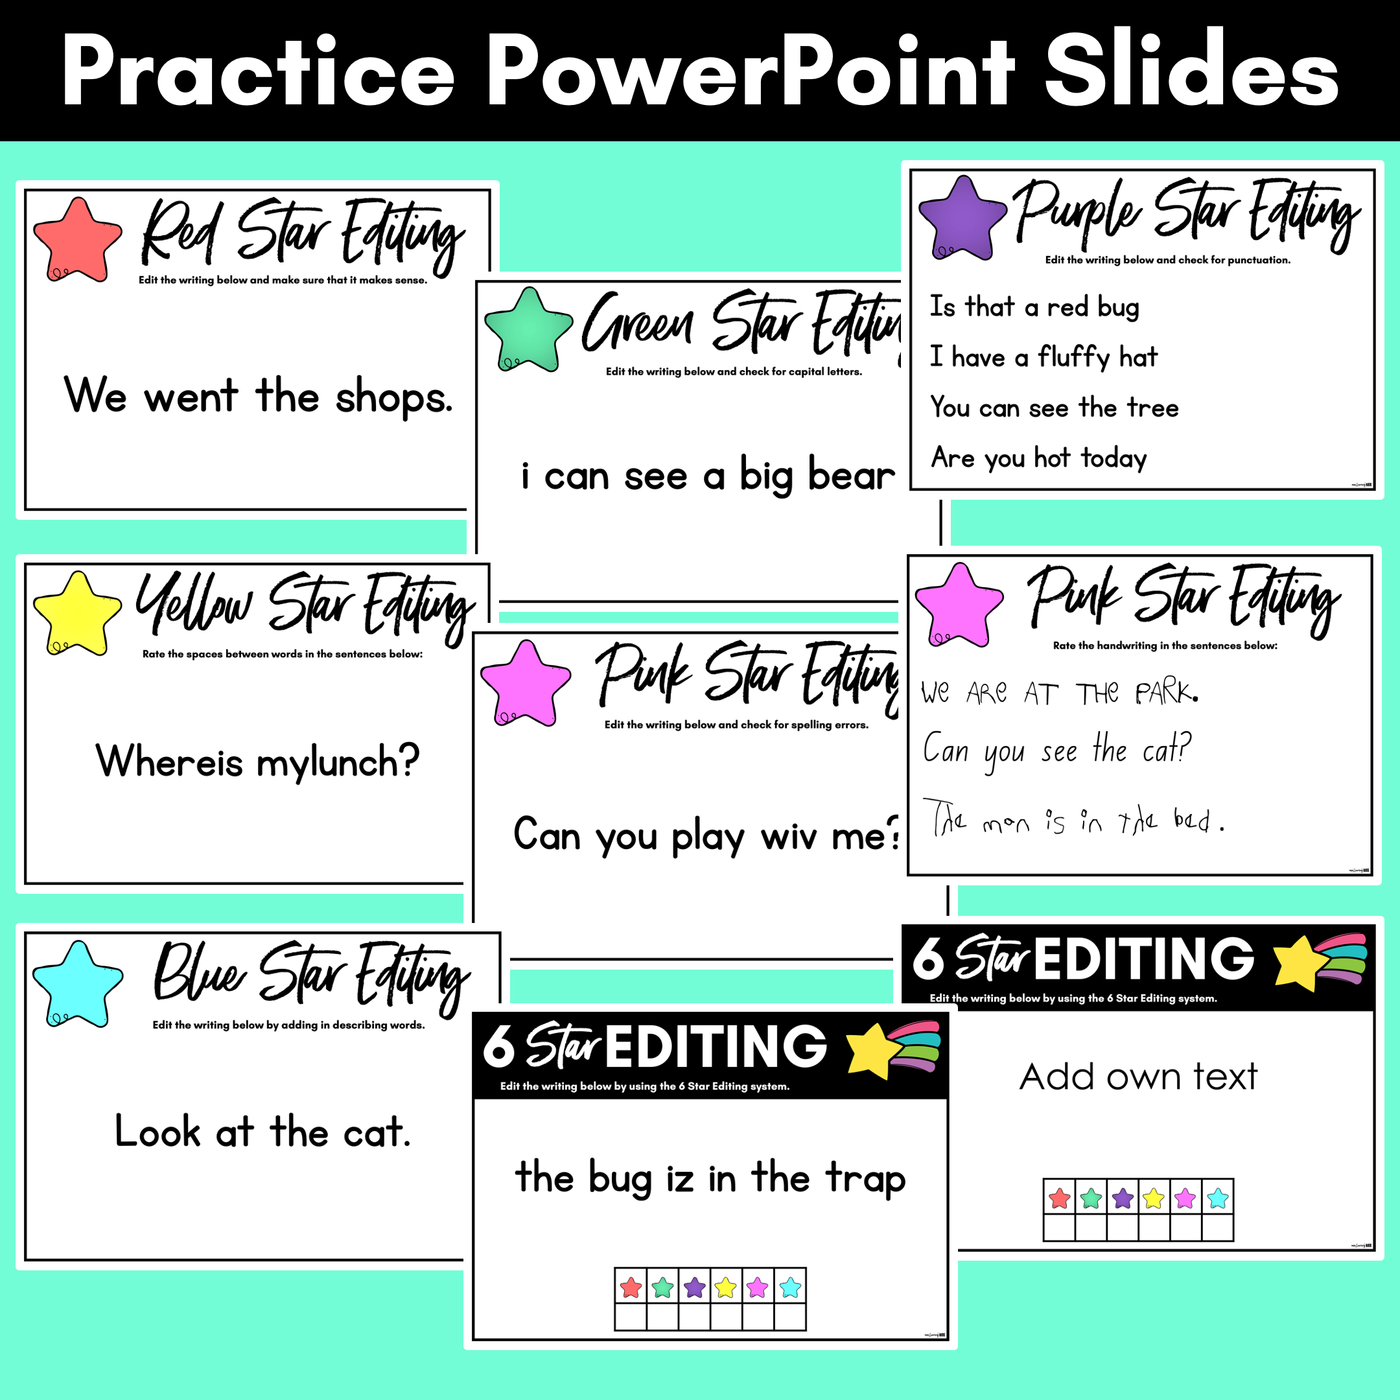 6 Star Editing Checklist | PowerPoint Slides